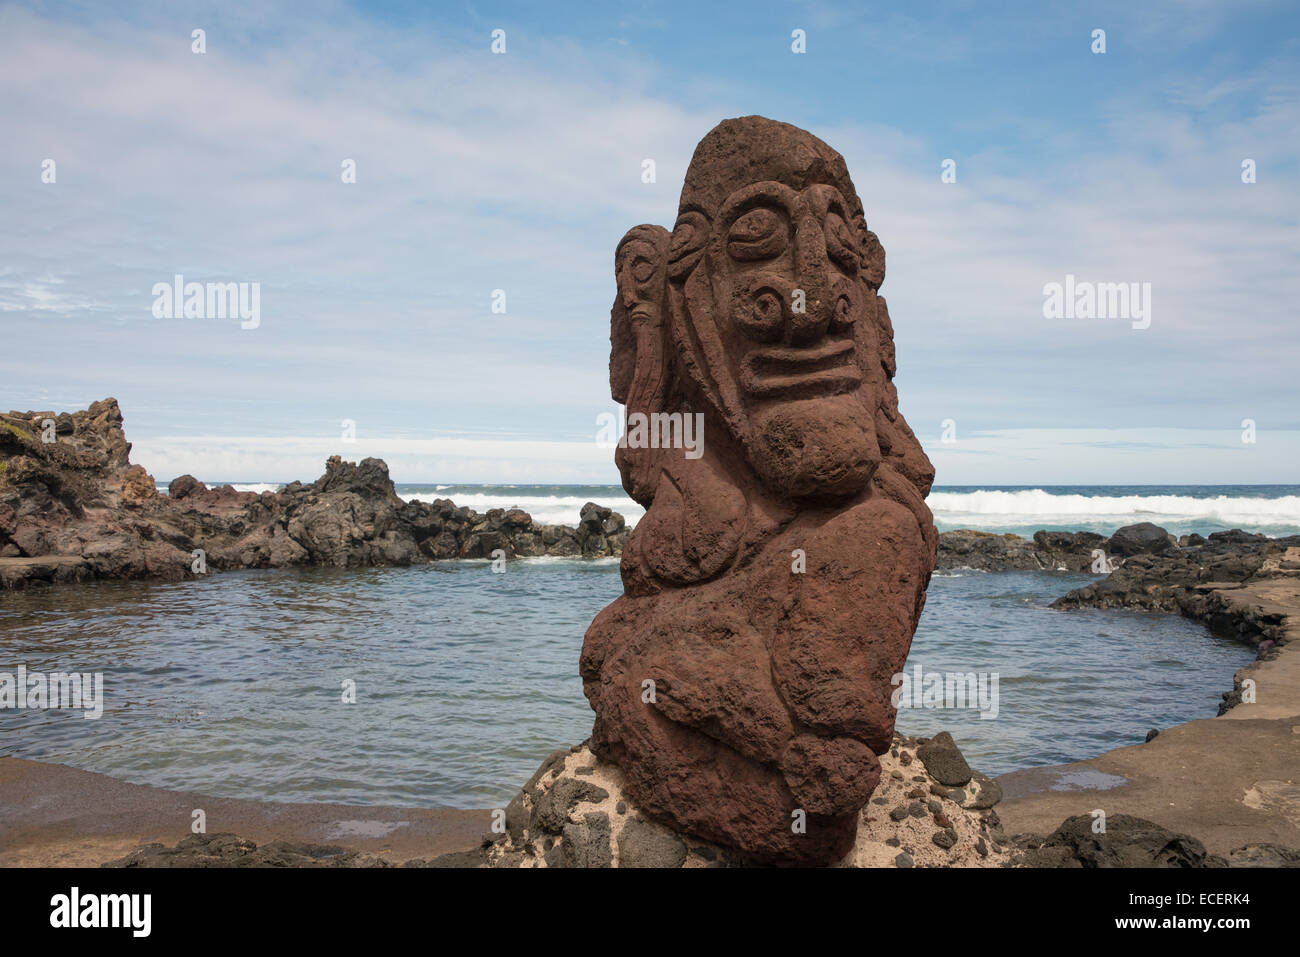 Le Chili, l'île de Pâques ou Rapa Nui, Hanga Roa. Sculpture en pierre  volcanique contemporaine fondée sur les lieux historiques de l'art Rapa Nui  Photo Stock - Alamy